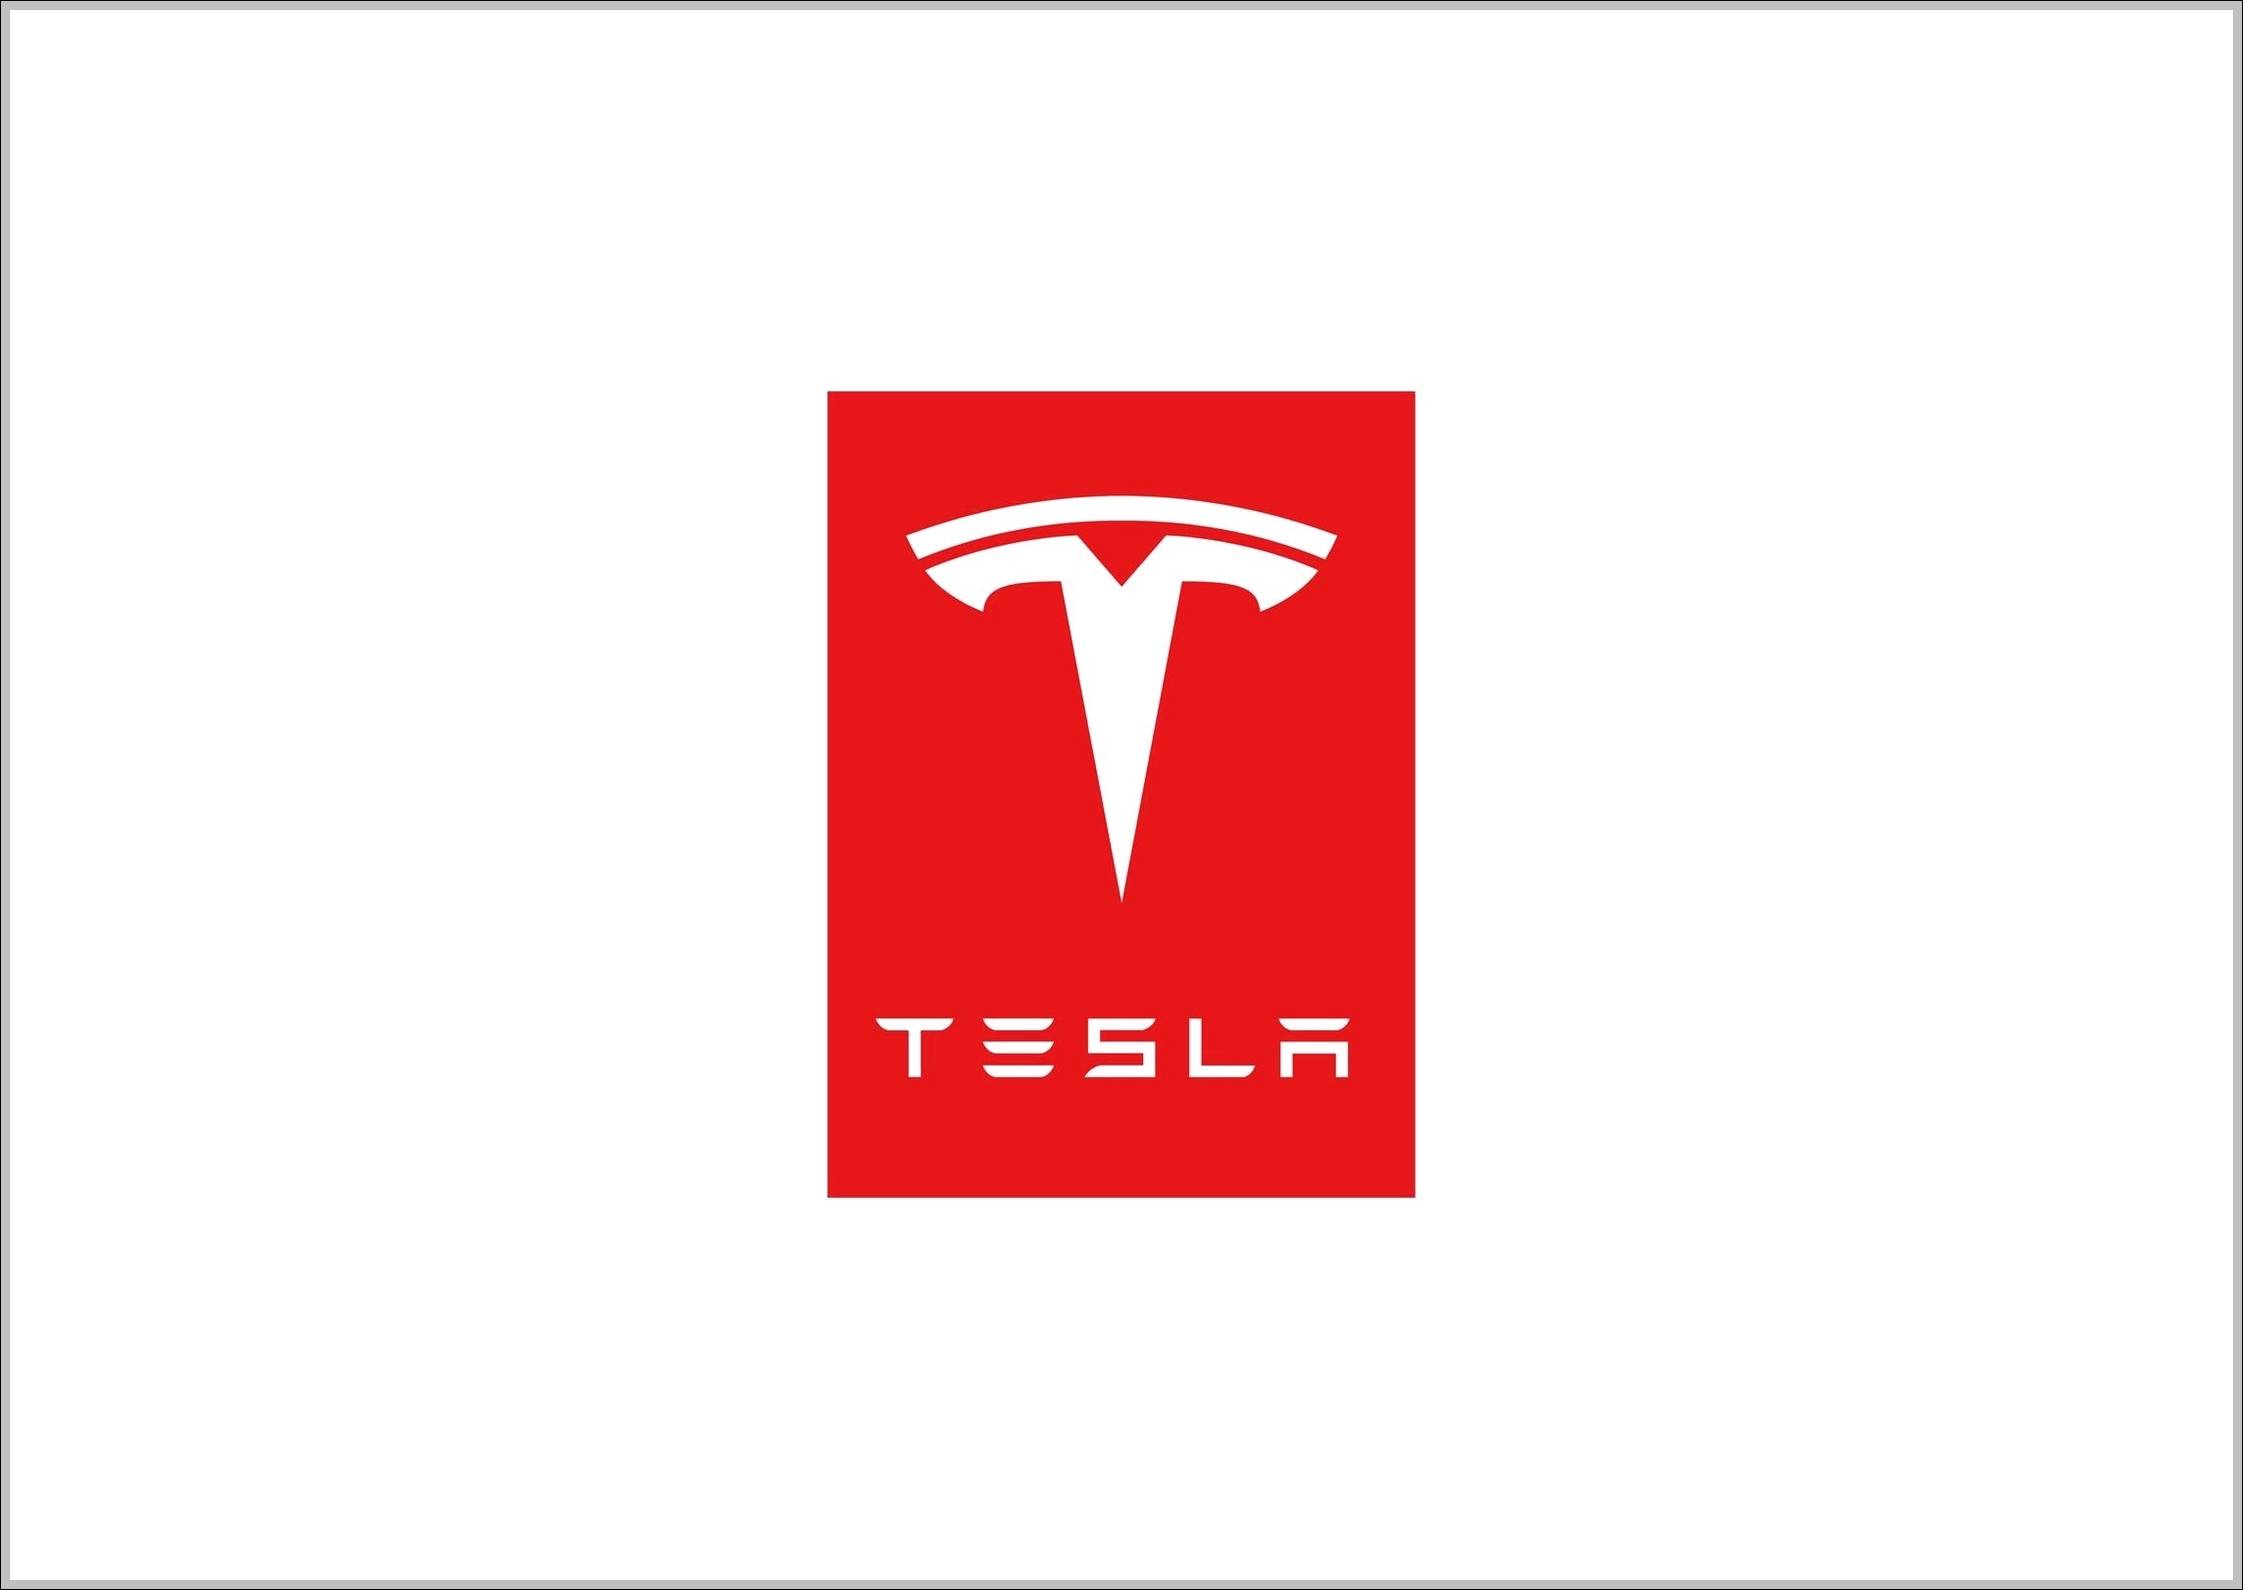 Tesla Red Logo - Tesla logo red | Logo Sign - Logos, Signs, Symbols, Trademarks of ...